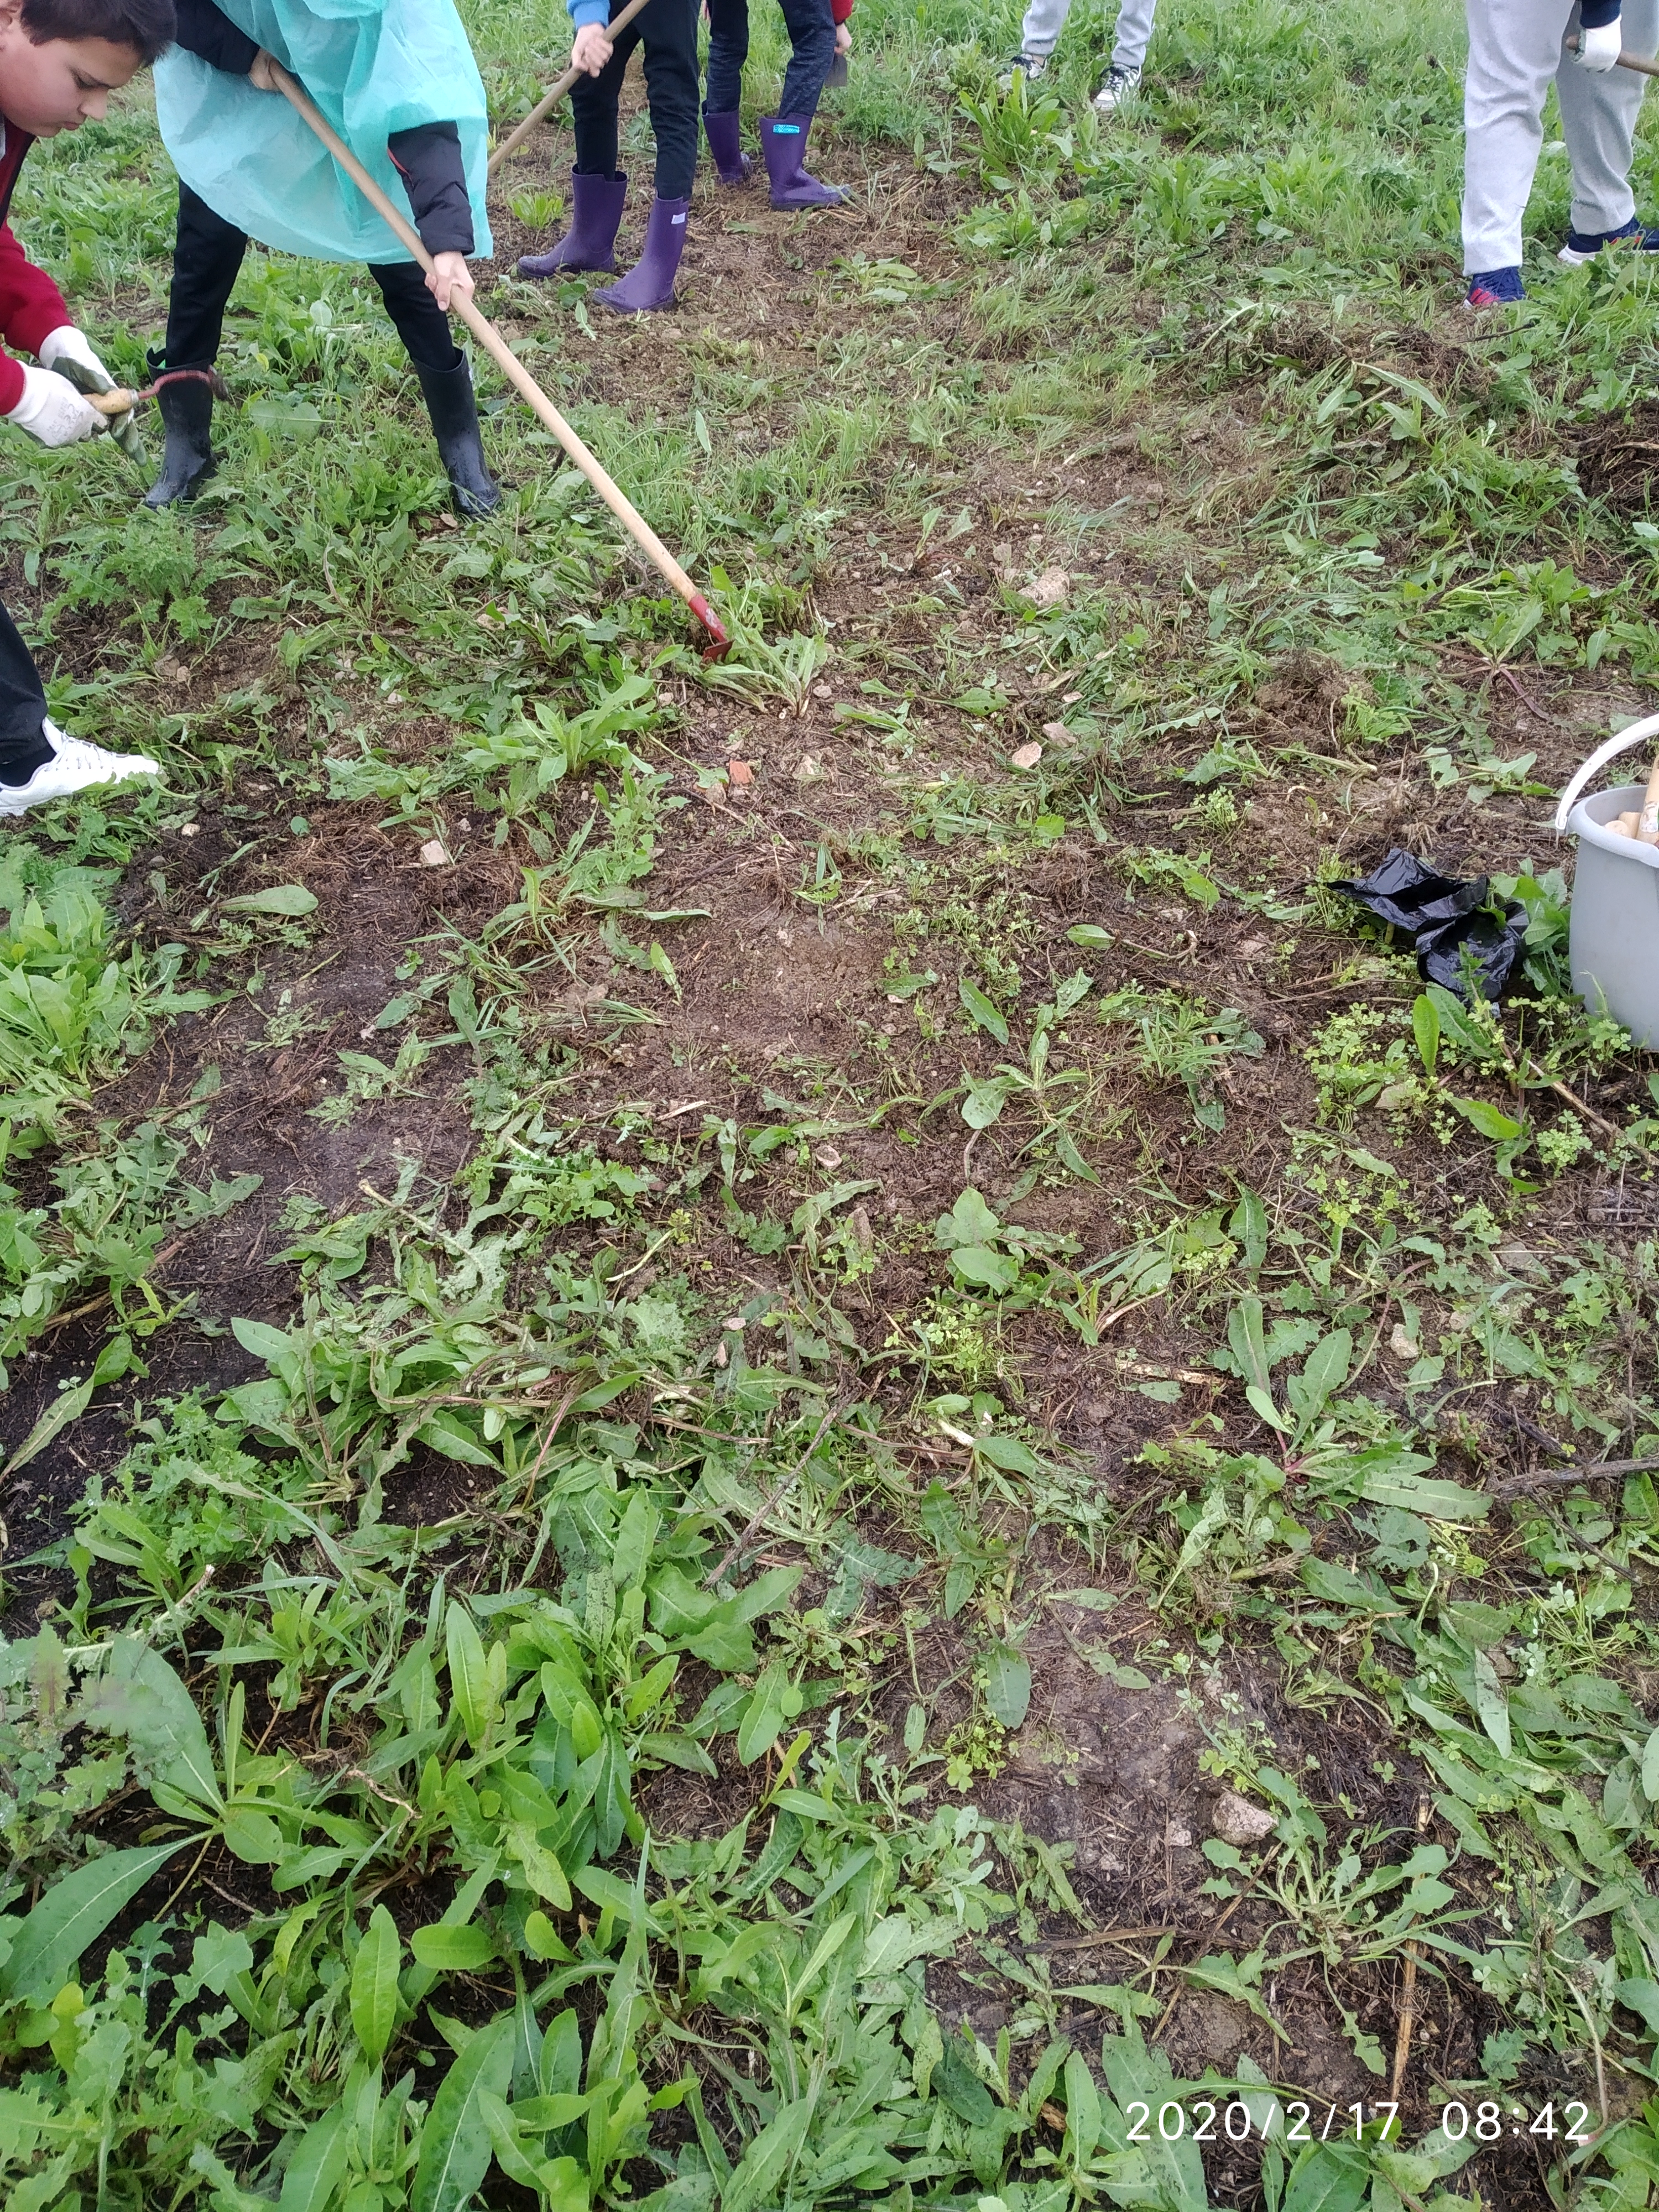 Os alunos do M6A e M8A trabalharam na horta para produzirem alimentos de forma sustentável. Começaram por arejar o solo, cavando com as enxadas.